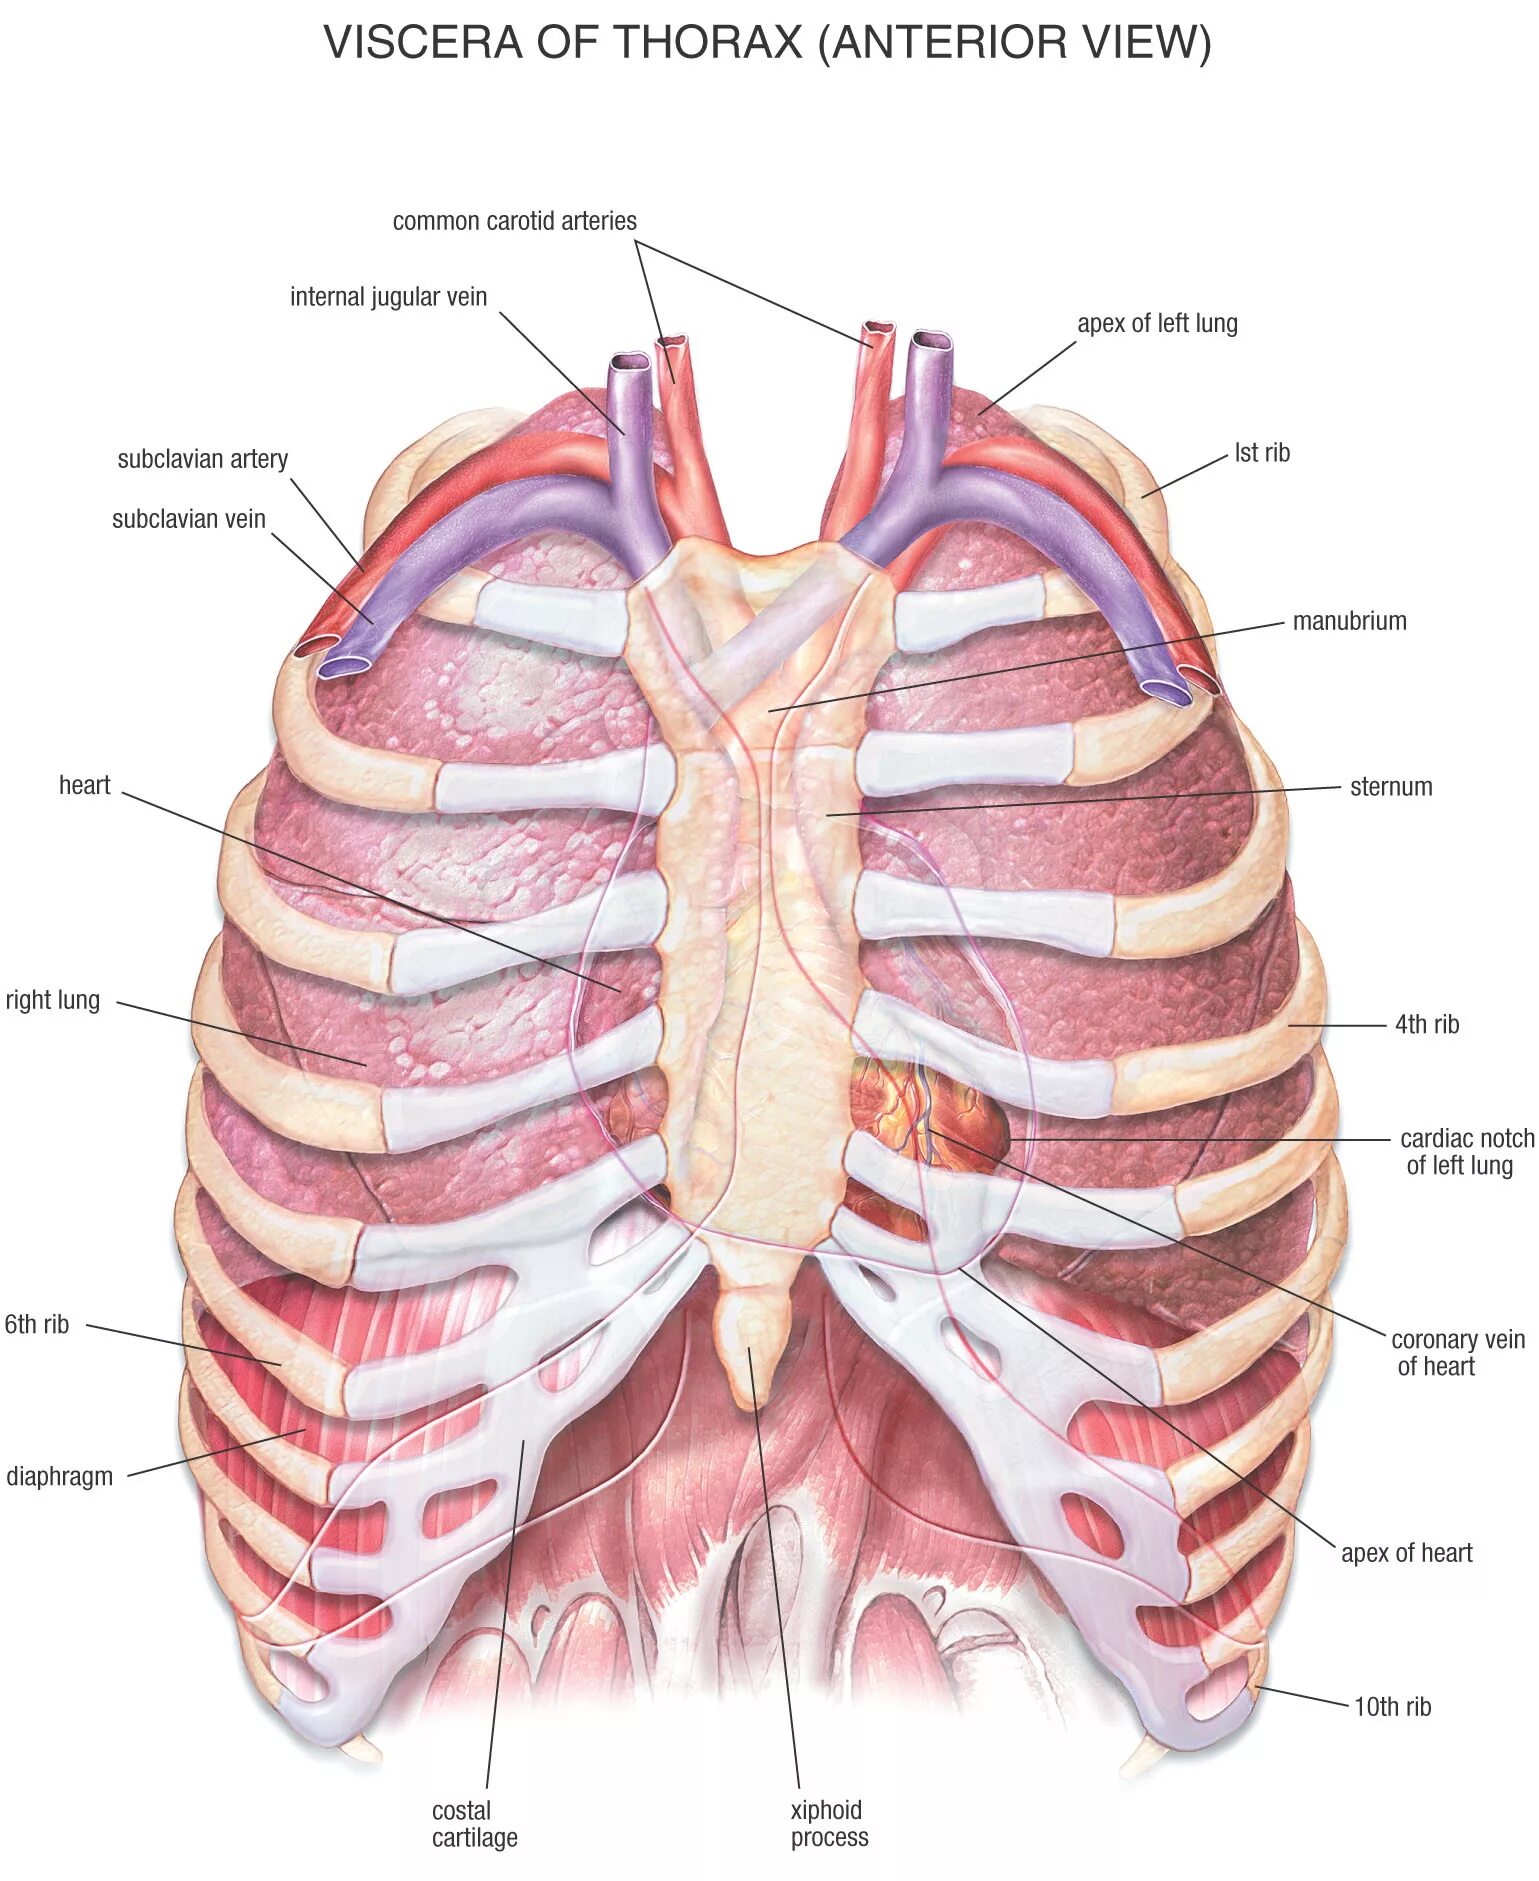 Анатомия органов грудной клетки. Анатомическое строение грудной клетки. Анатомический атлас грудной клетки. Легкие в грудной клетке анатомия. Местоположение легких